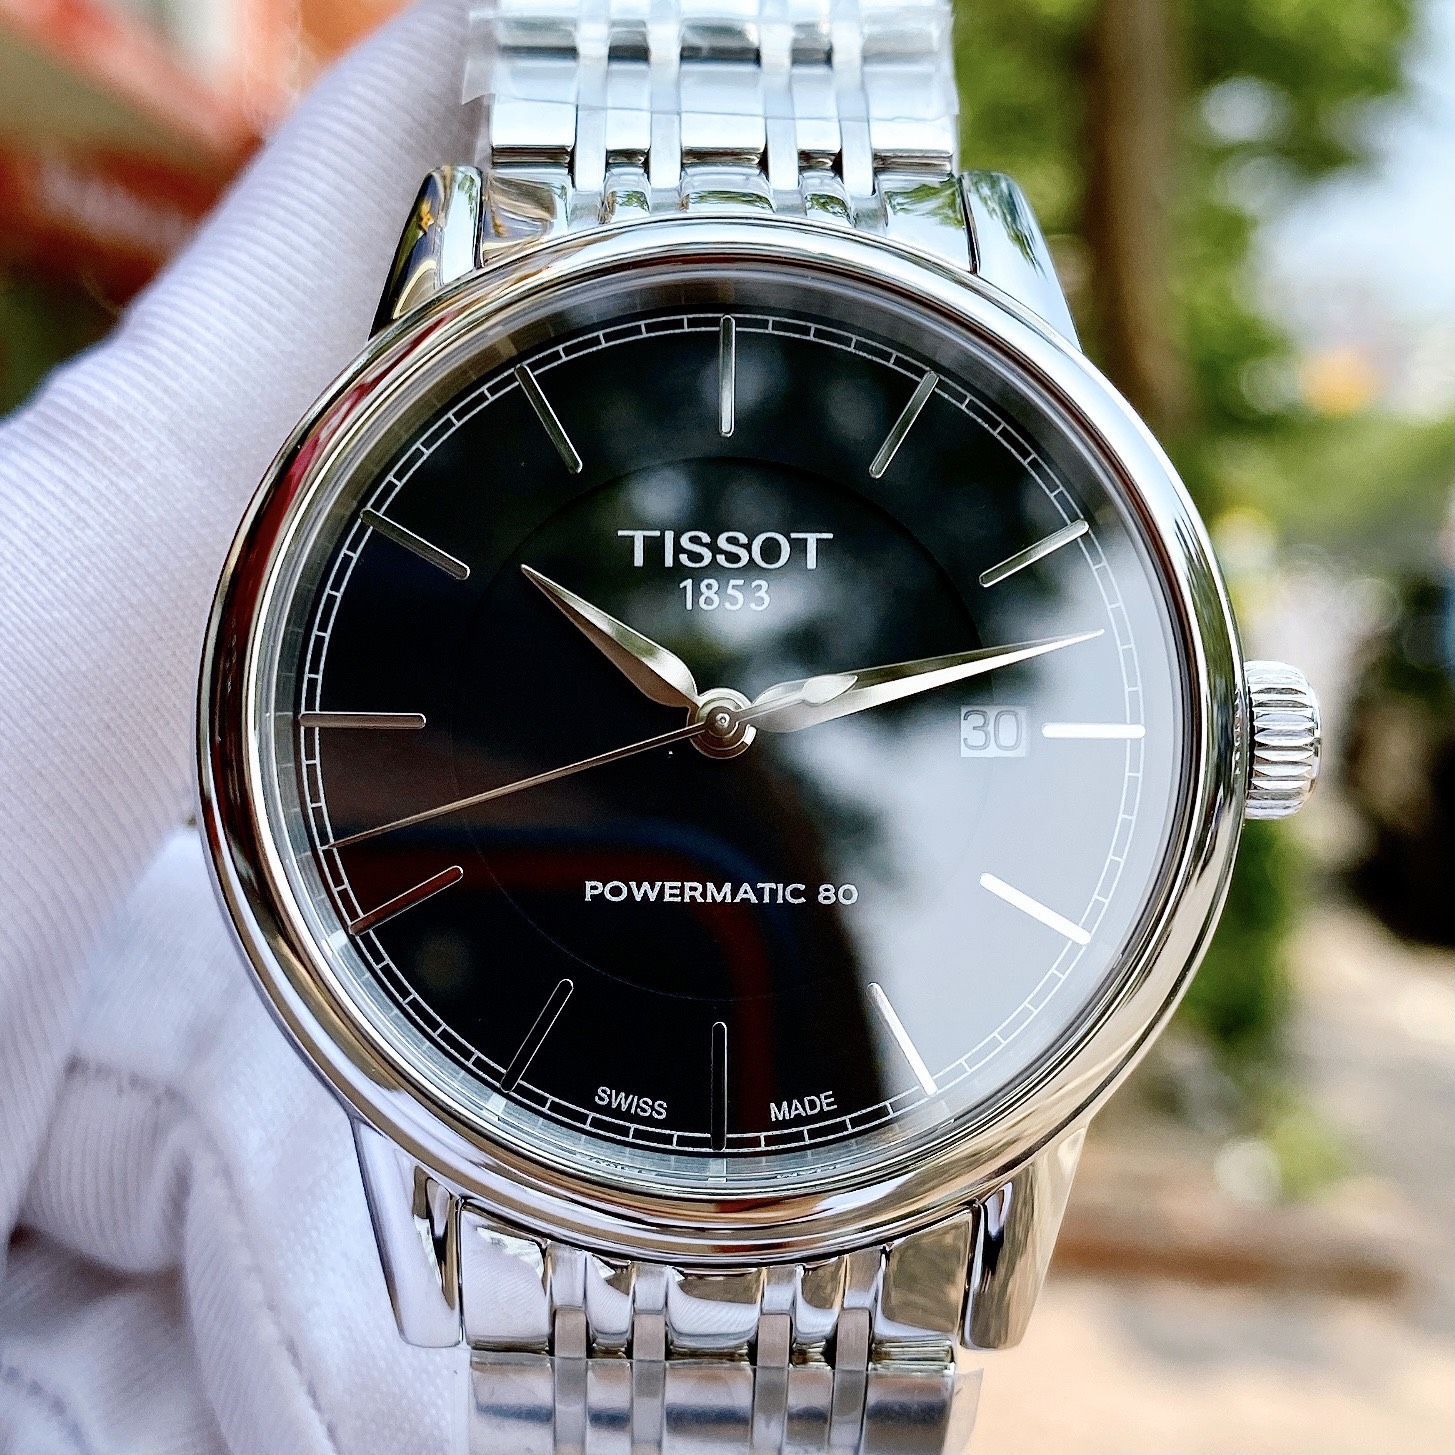 Đồng hồ TISSOT T085 cho quý ông lịch lãm, phong cách